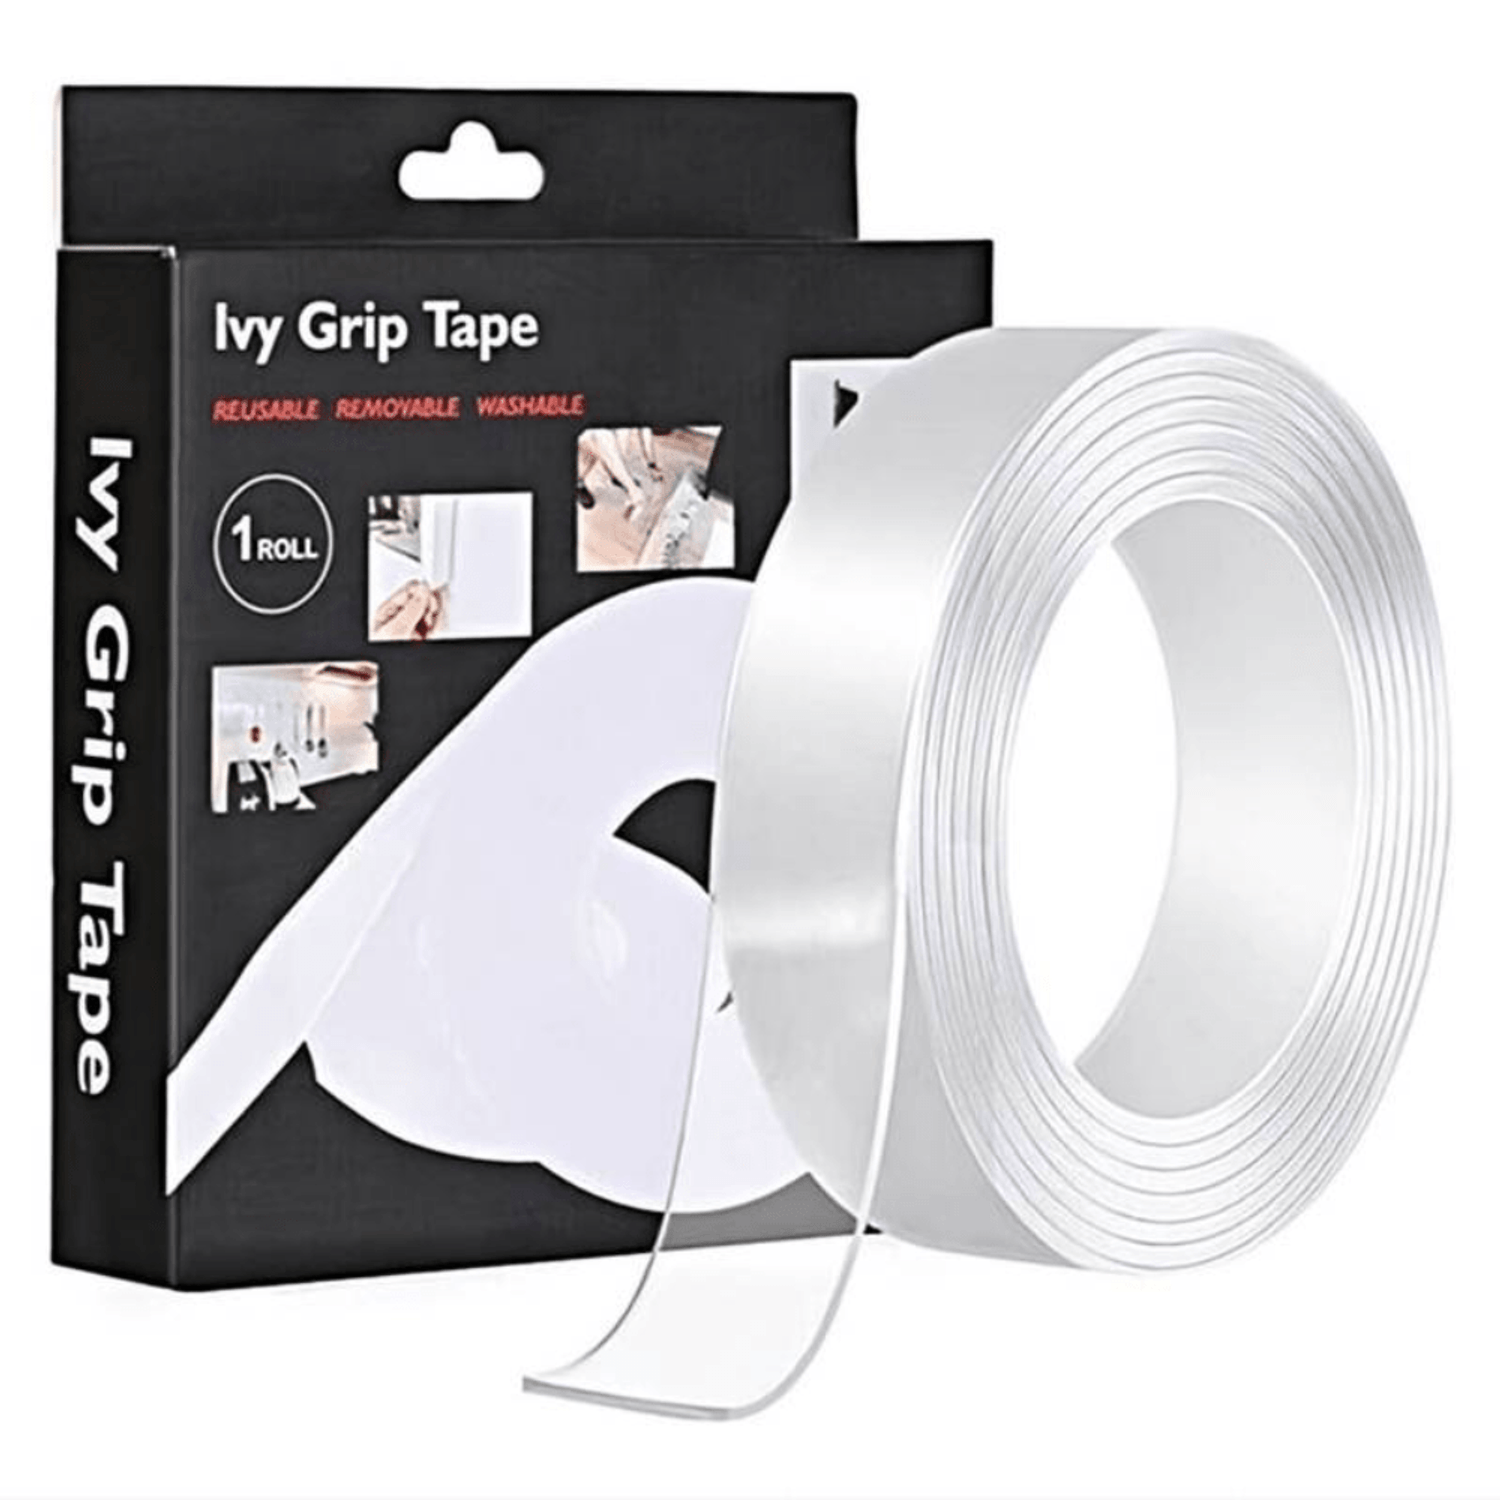 Tienda Online on Instagram: CINTA NANO TAPE La cinta nano es un tipo de  cinta que se puede pegar muy firmemente en paredes, azulejos, vidrio,  plástico y otras superficies, y puede soportar